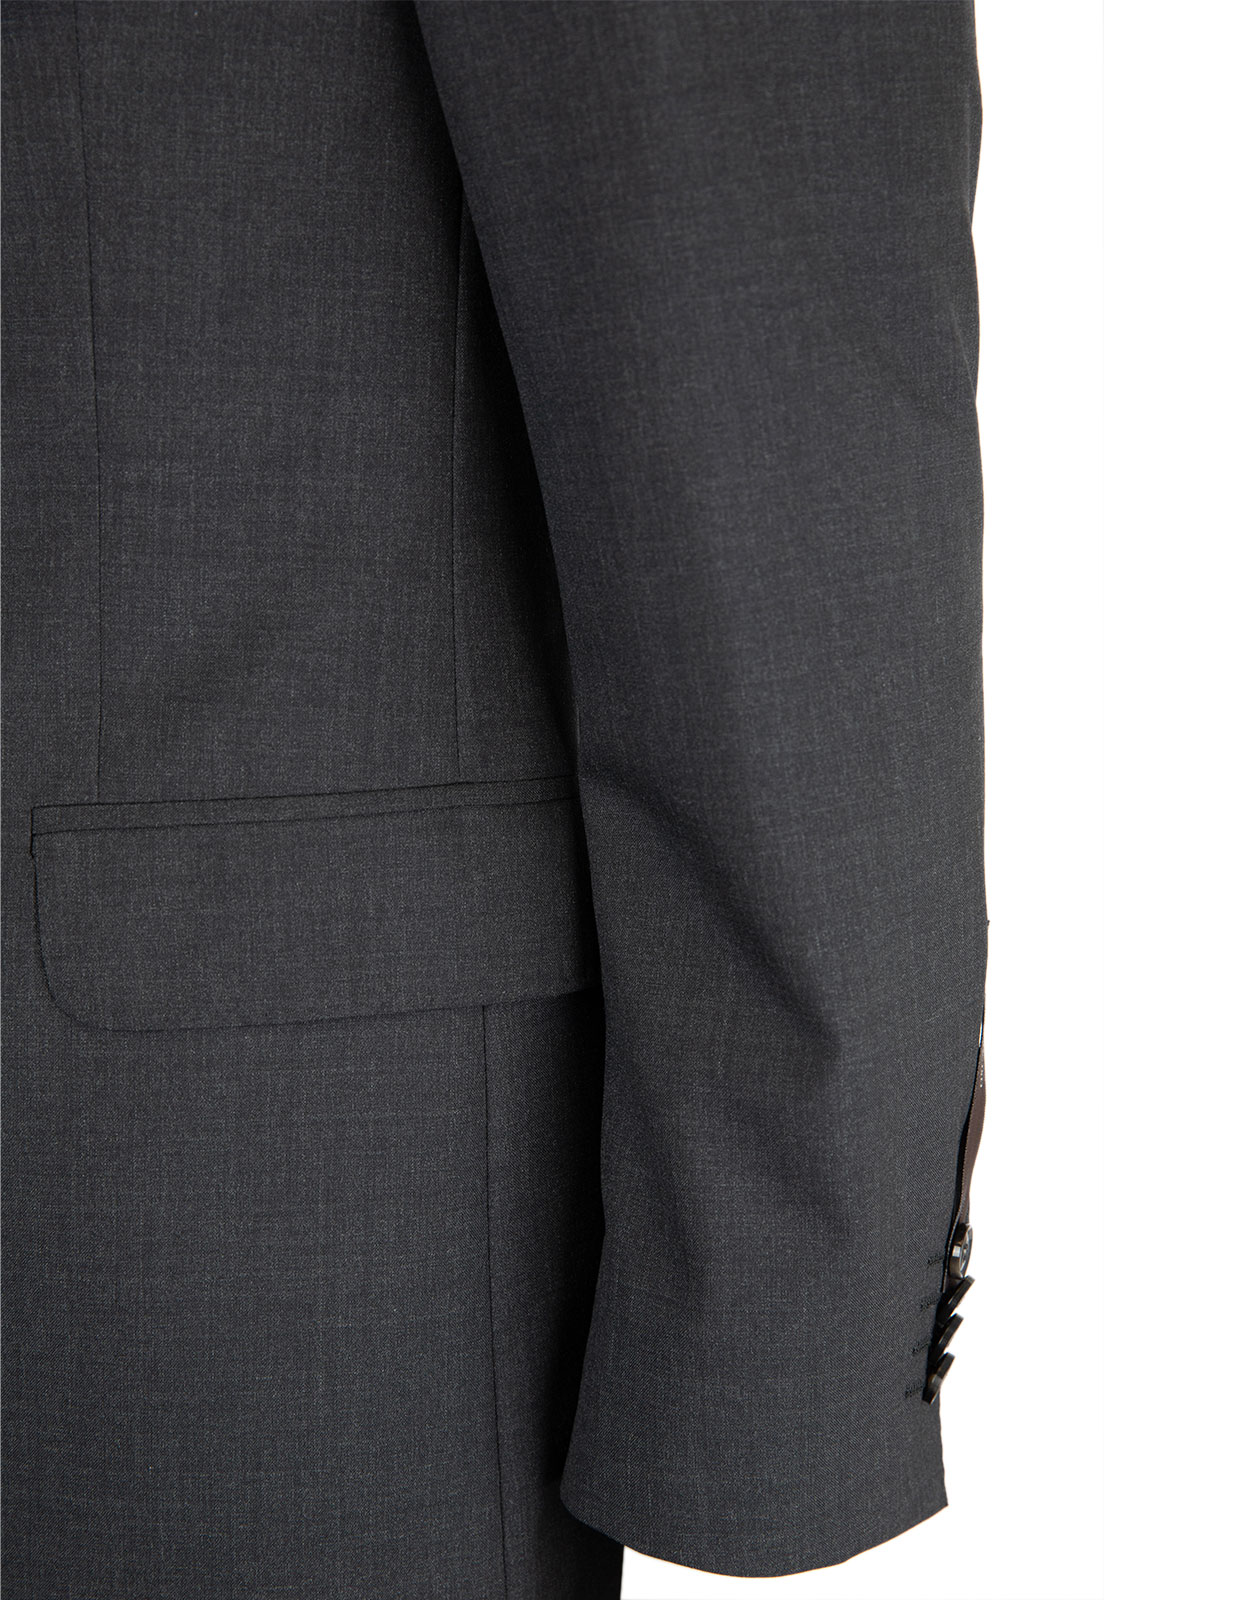 Edmund Suit Jacket Slim Fit Mix & Match Wool Dark Grey Stl 44